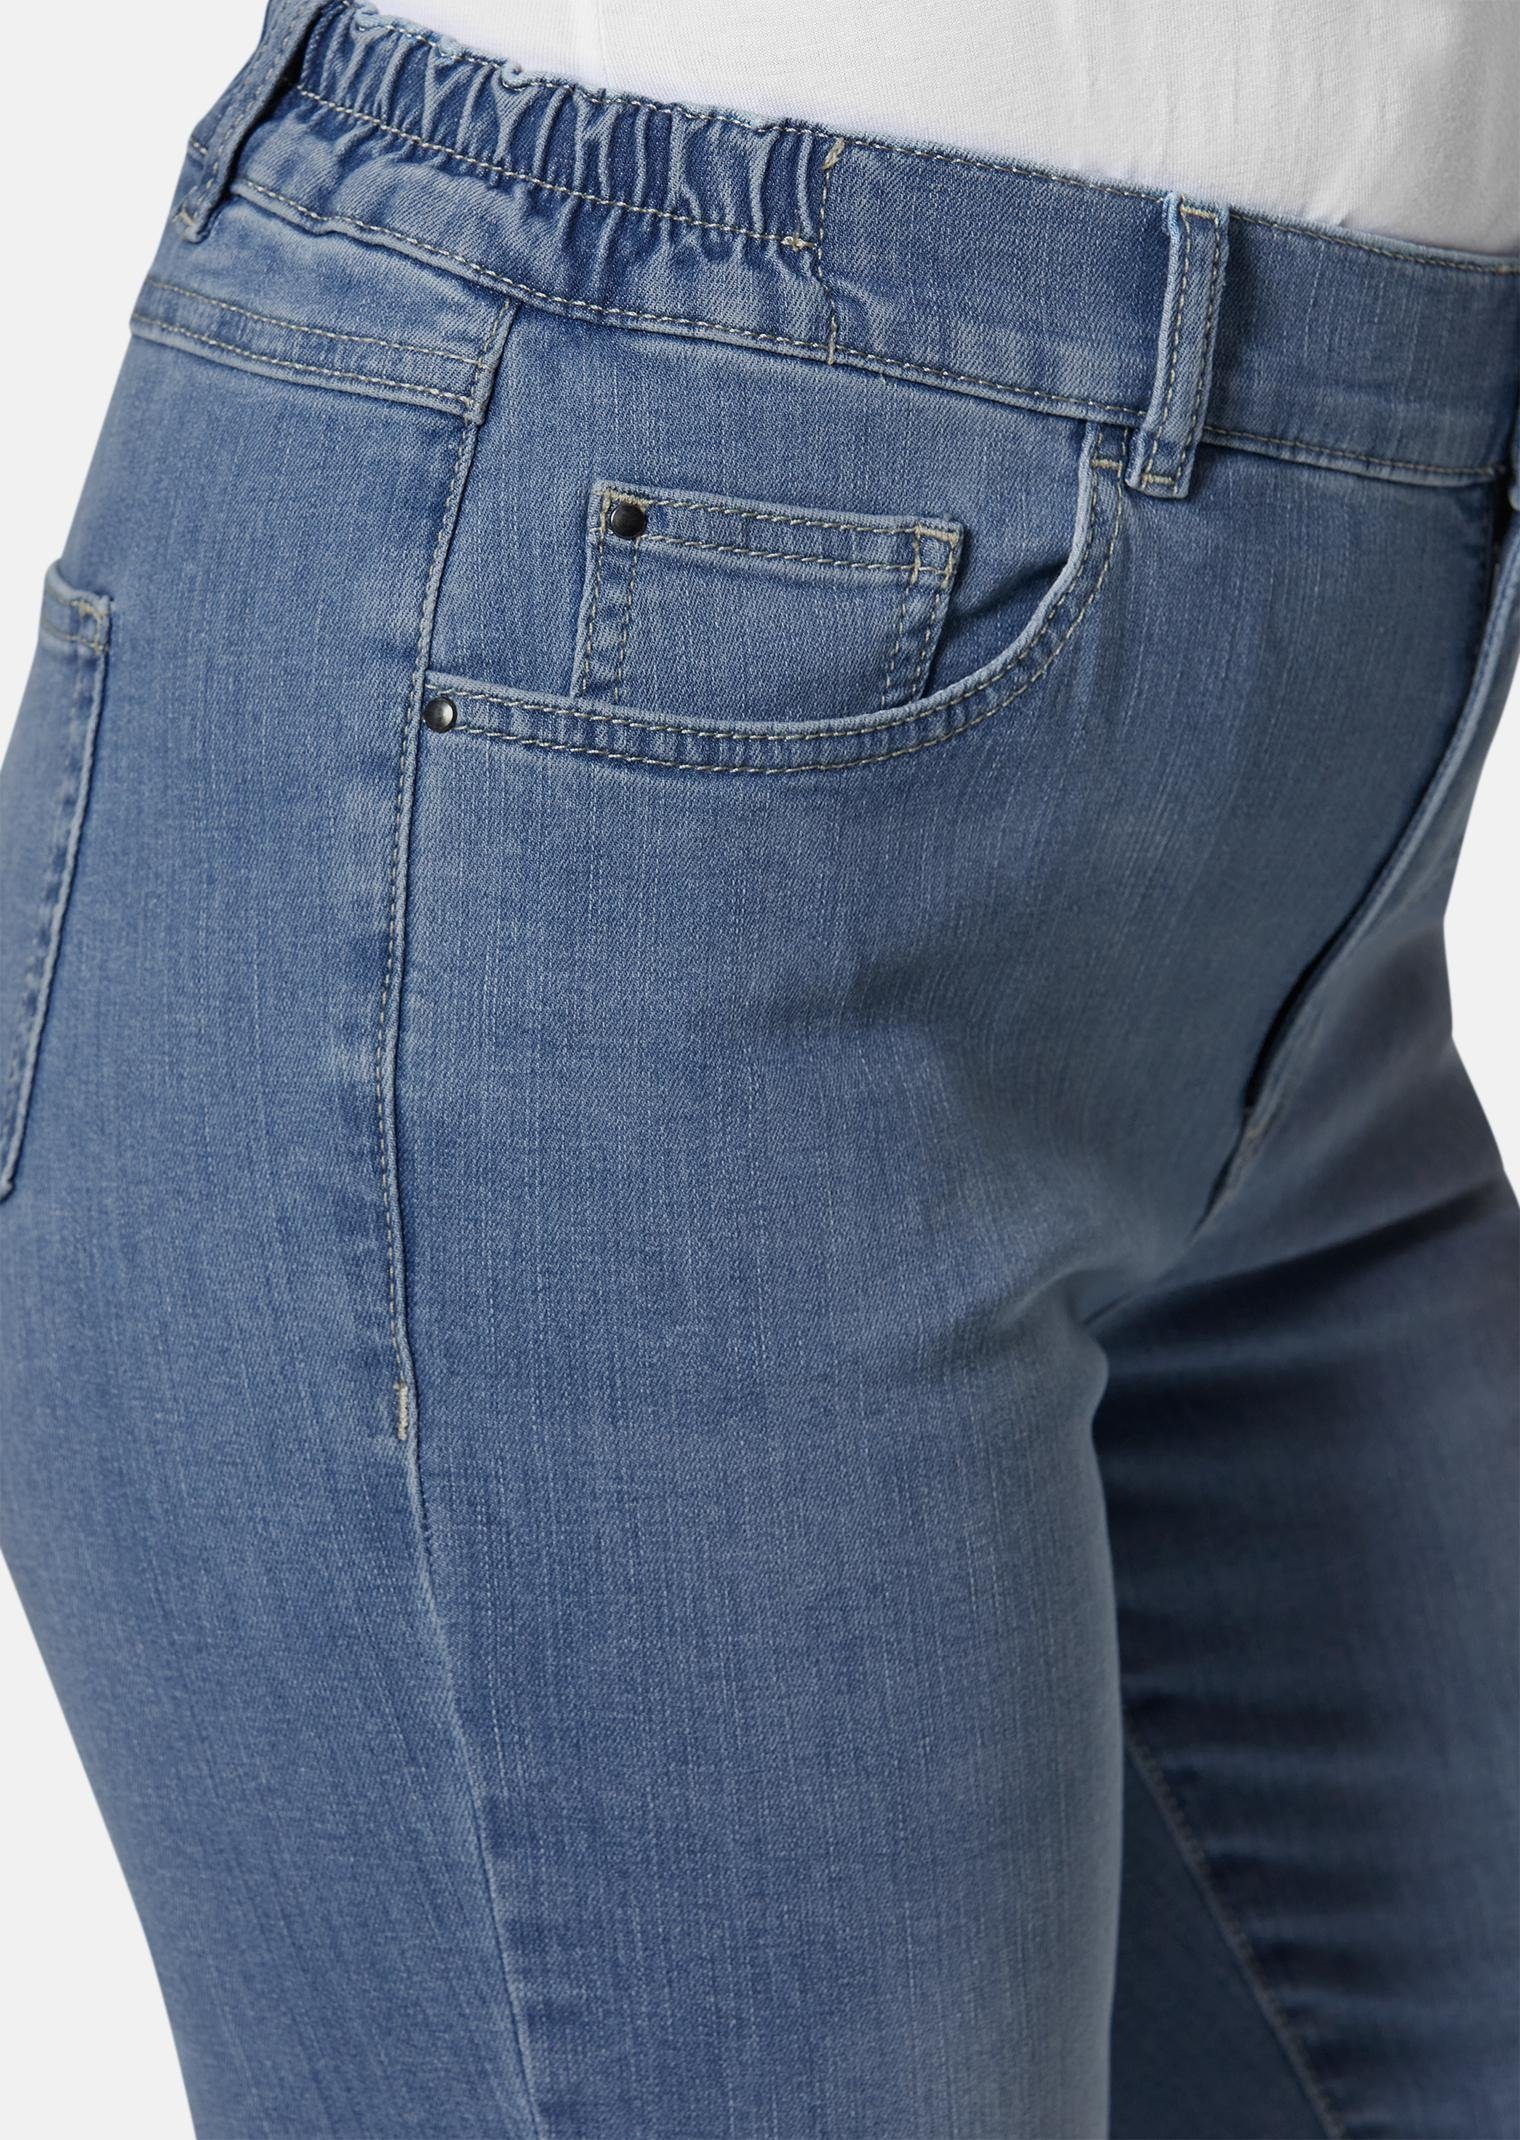 Jeans Bequeme Kurzgröße: hellblau GOLDNER